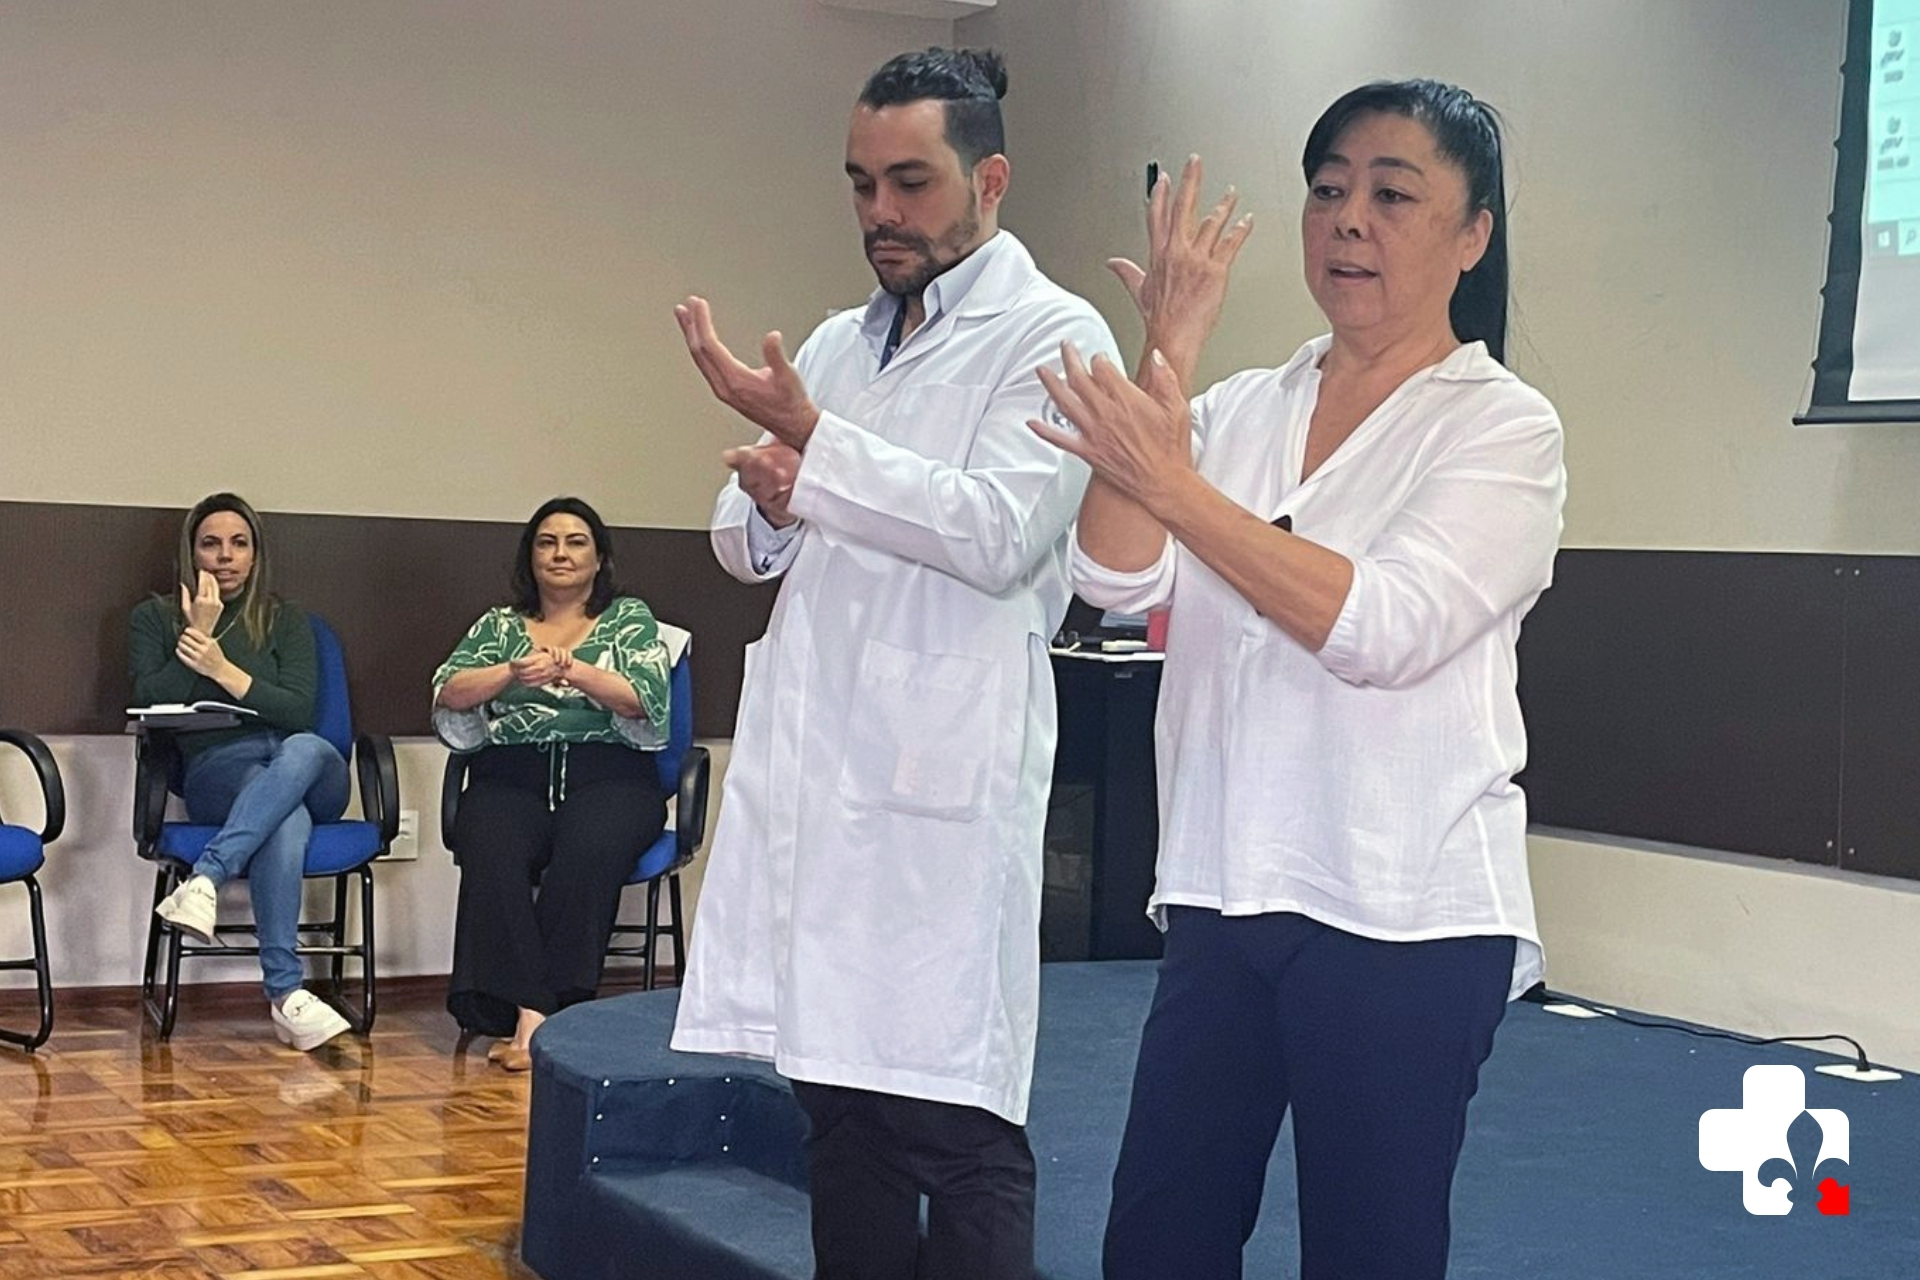 Santa Casa de Lorena realiza treinamento alinhado à meta internacional de segurança do paciente